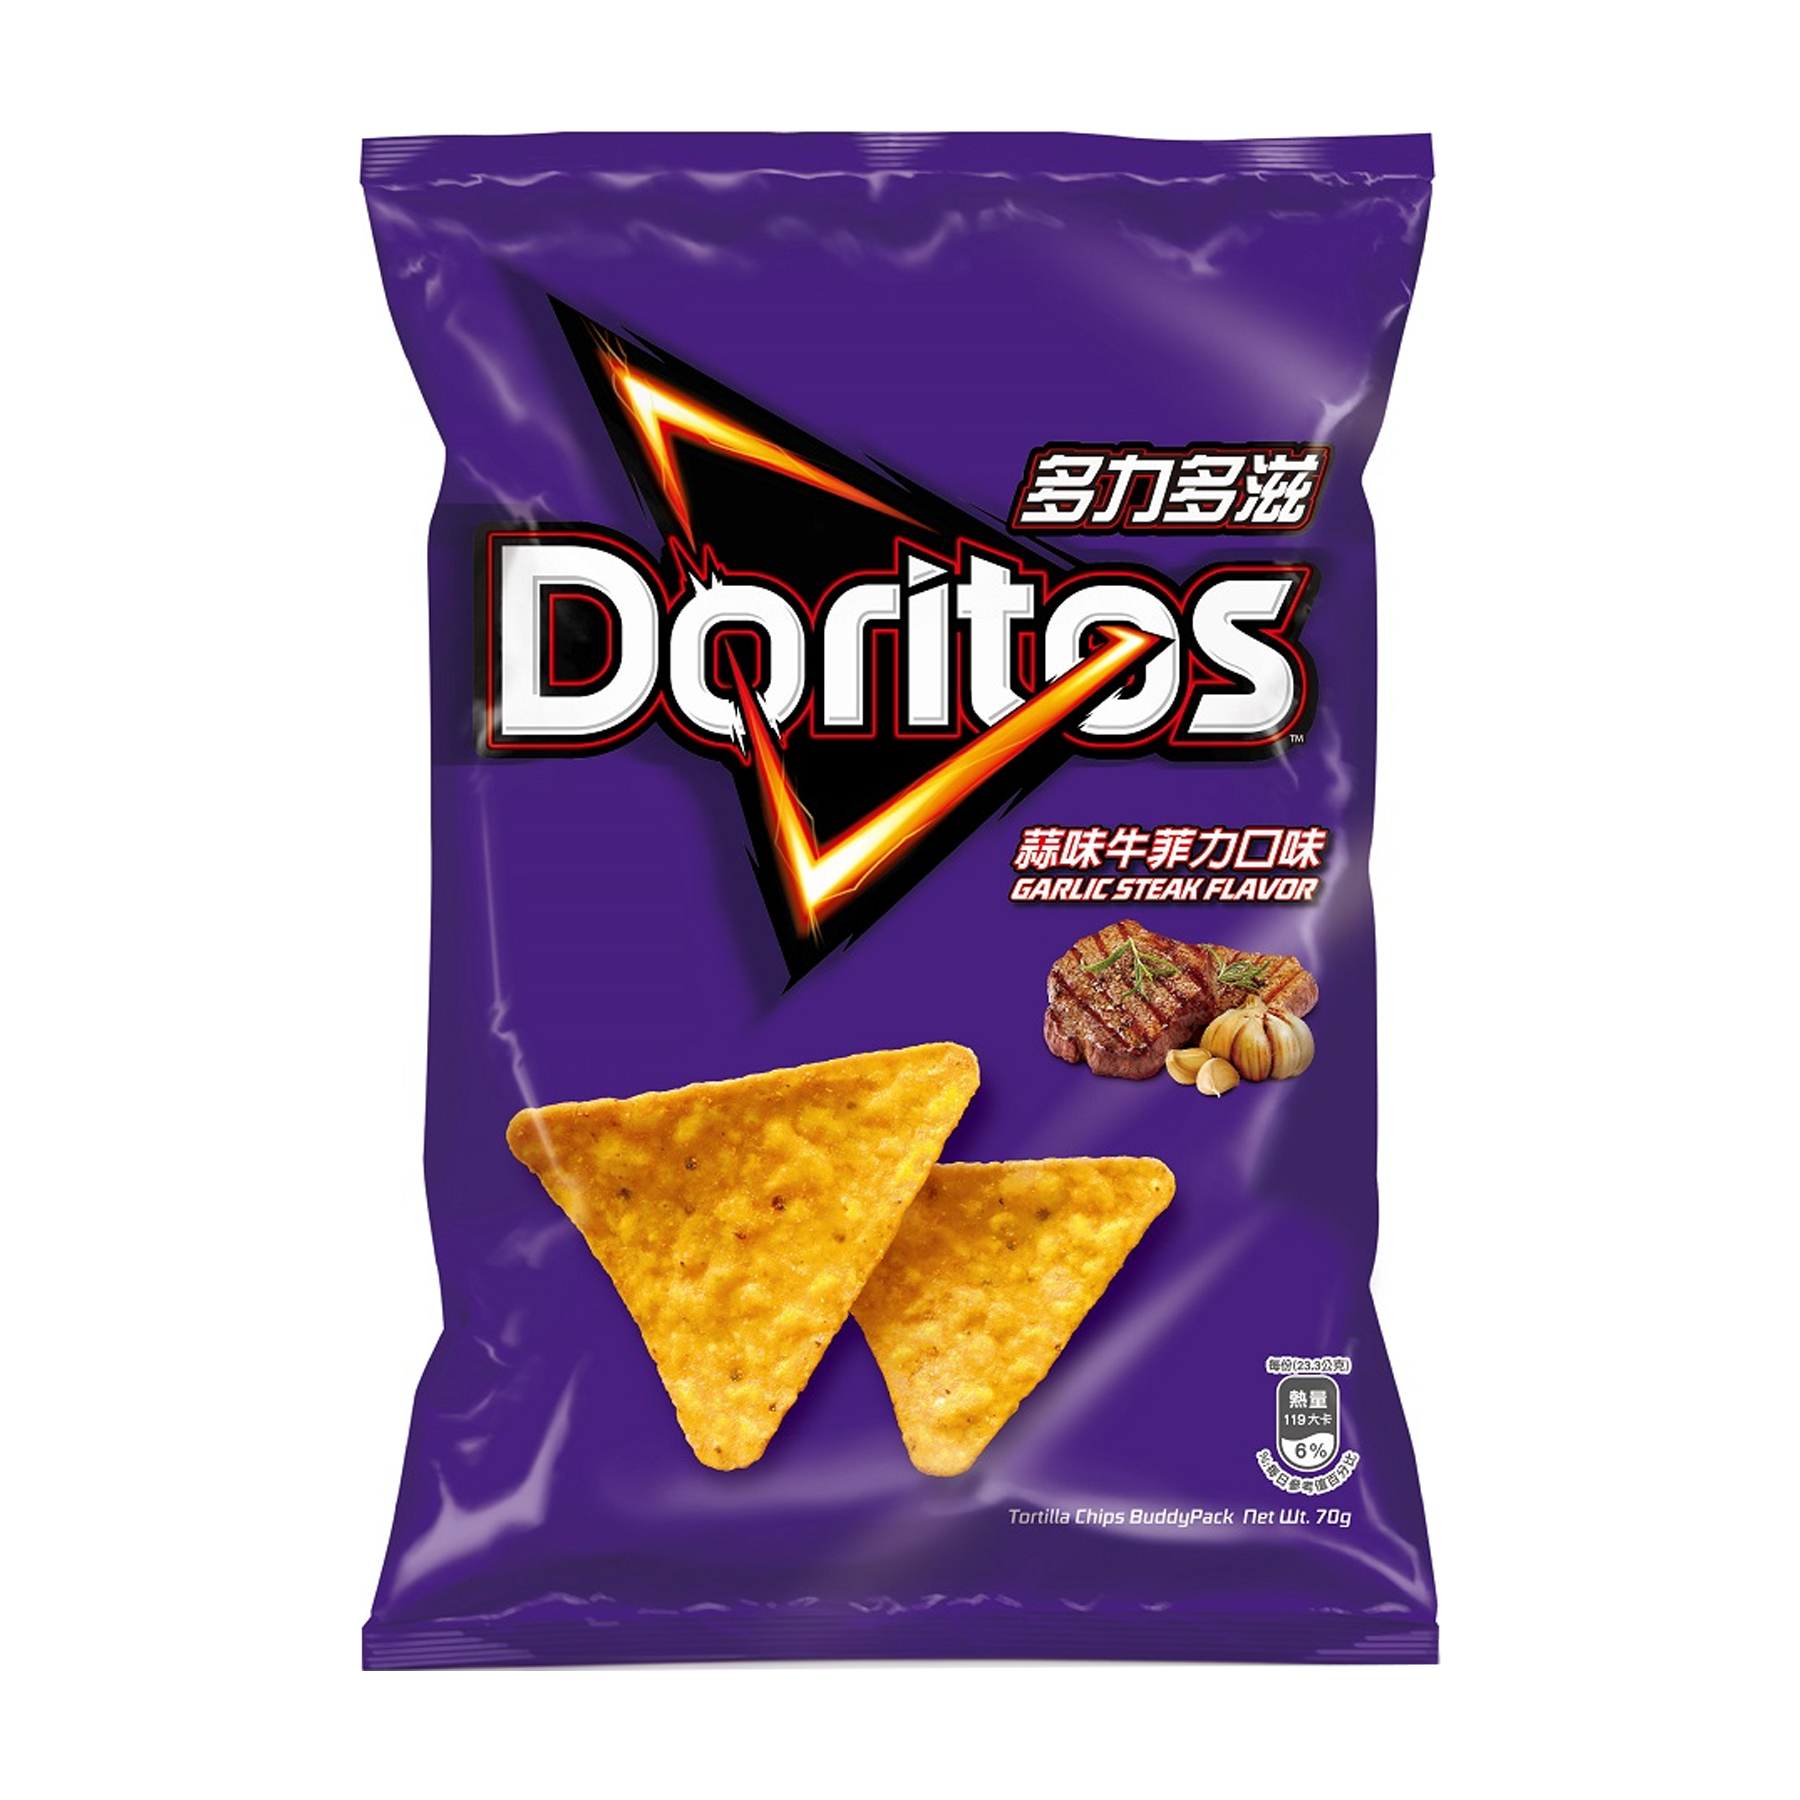 Doritos Garlic Steak Flavored Chips (48G)